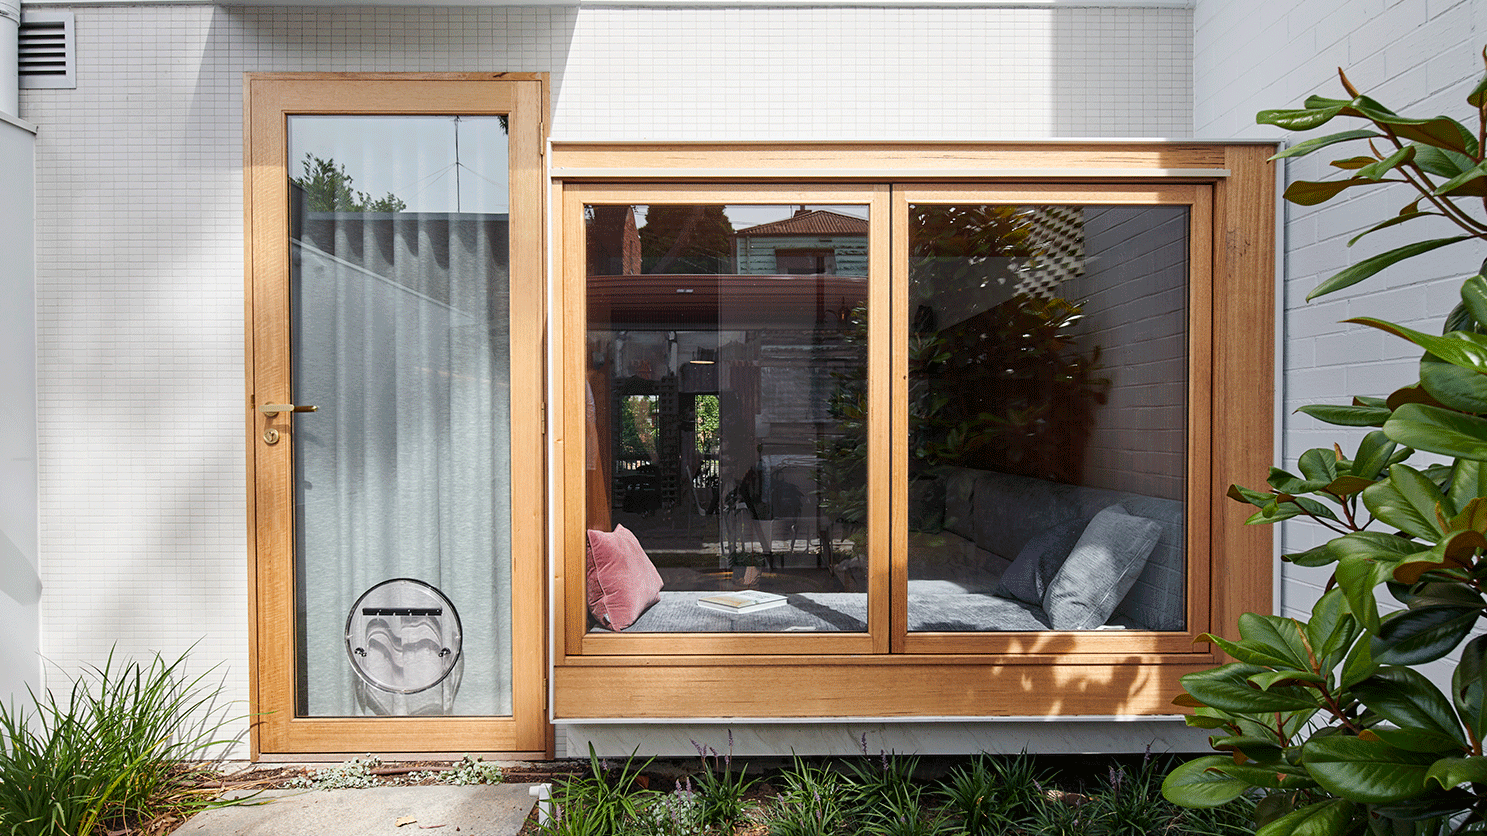 Porta para o quinta vista de fora, um gif com as janelas de vidro e moldura de madeira abrindo. À esquerda, a porta de vidro com moldura em madeira e uma porta redonda para cachorro coberta com uma cortina interna.